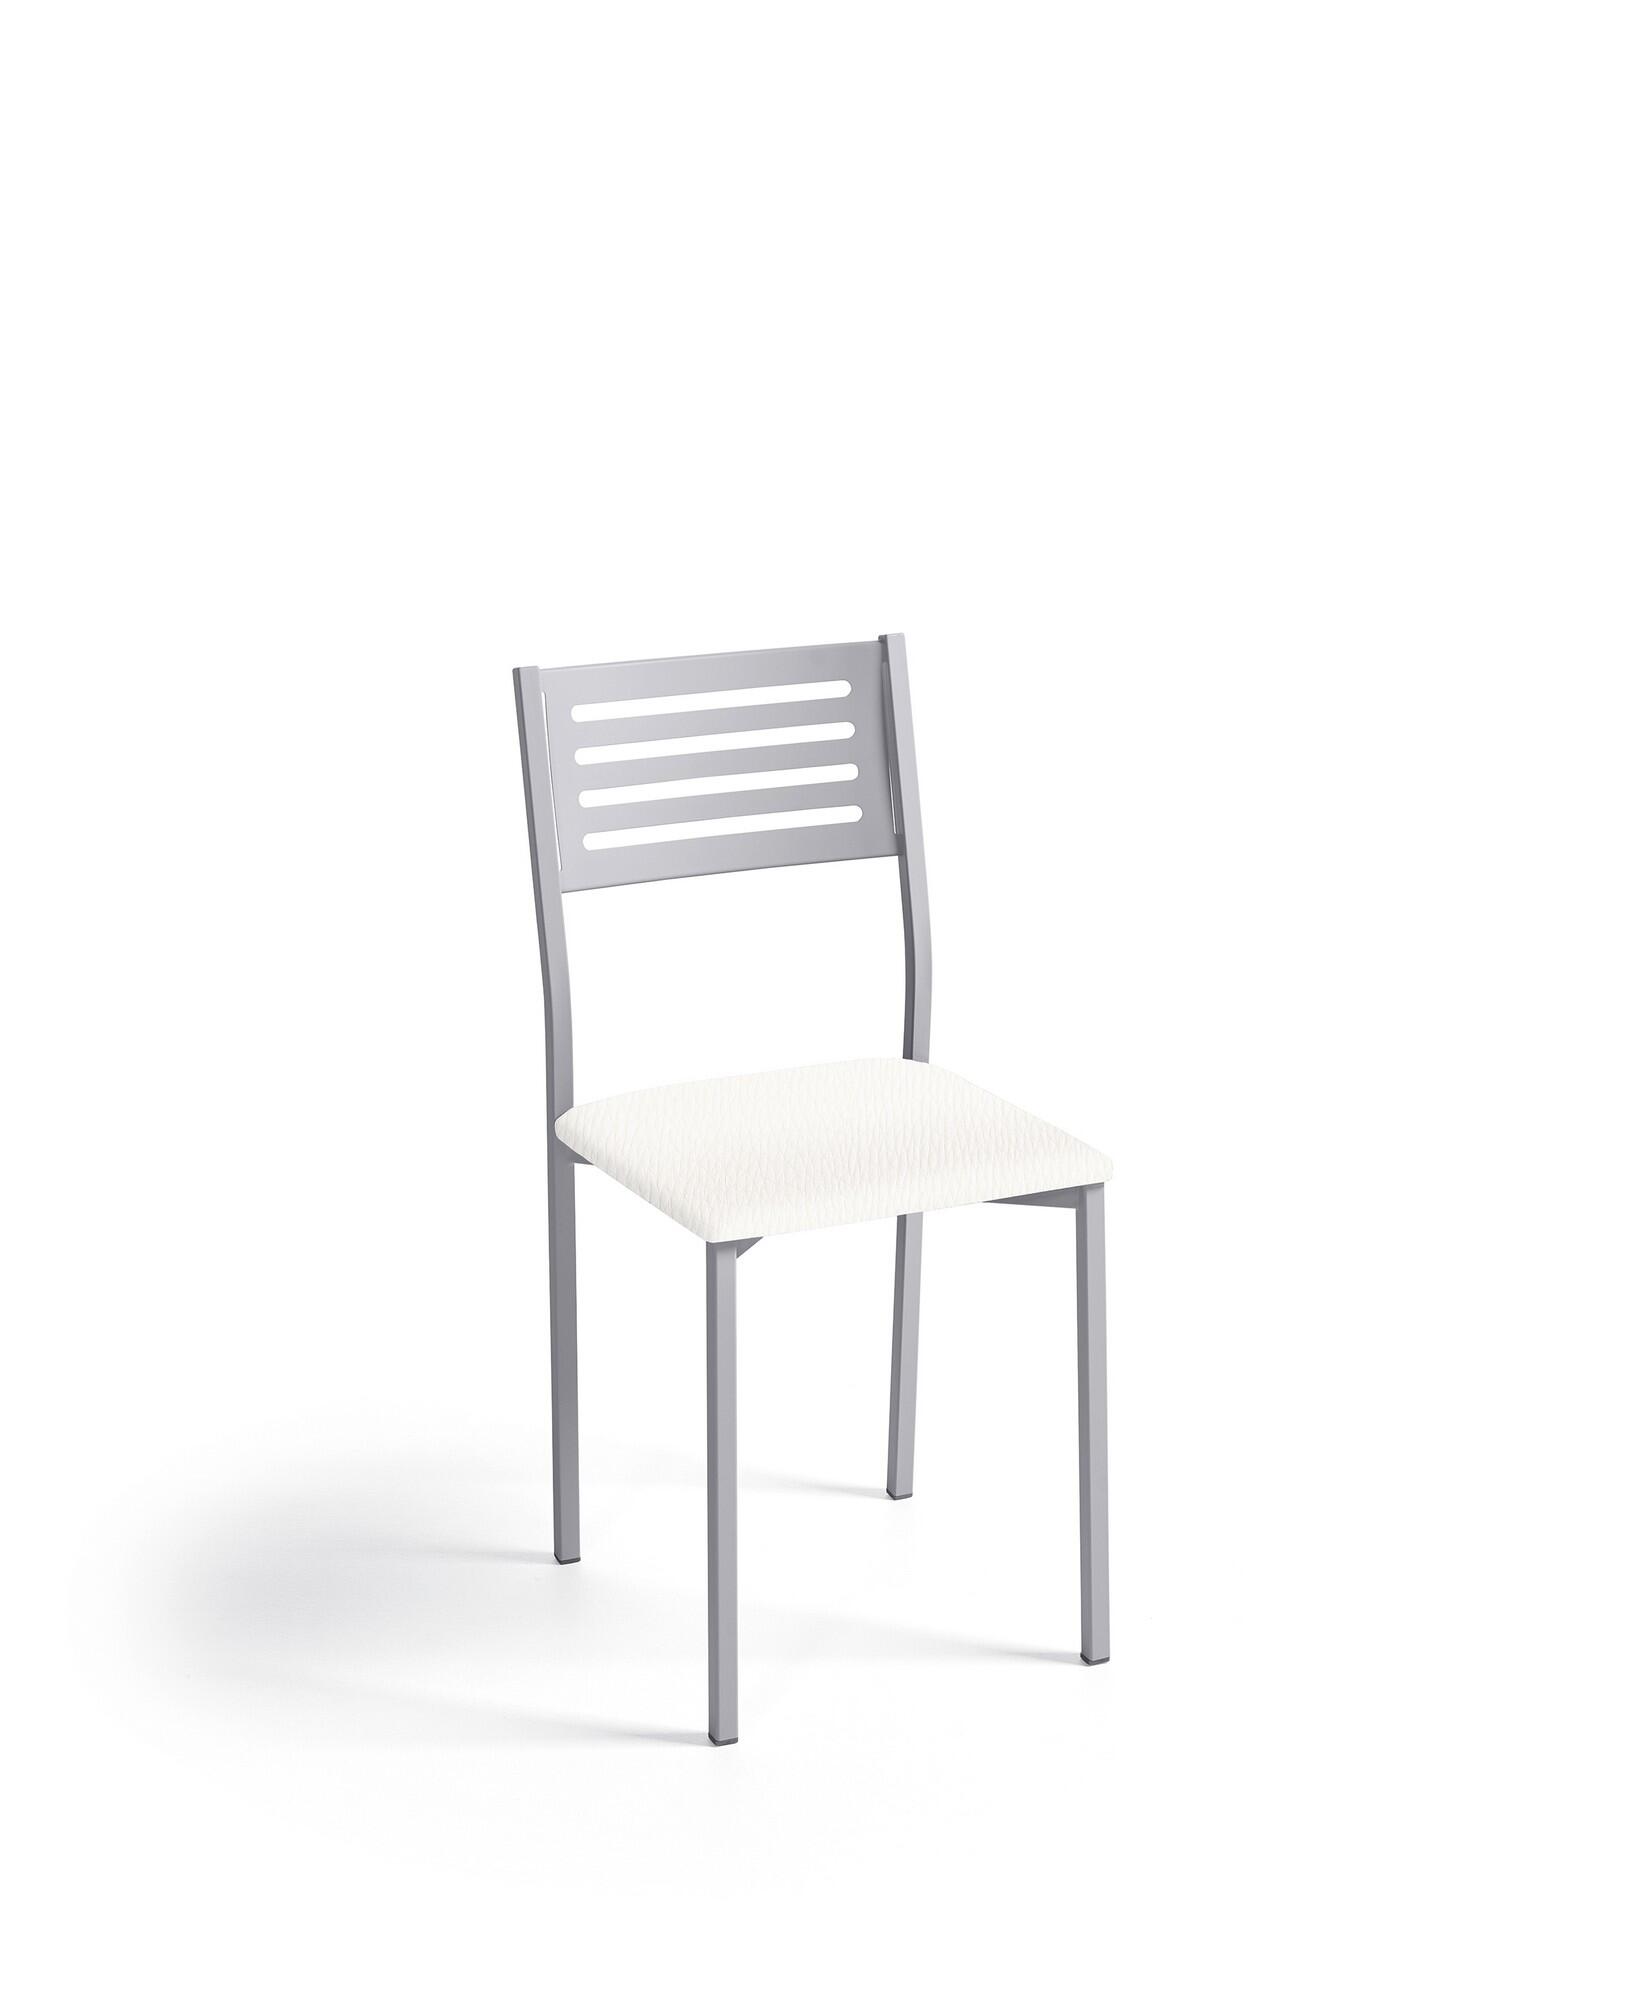 Silla de estructura color aluminio y asiento blanco de 38 x 86 cm